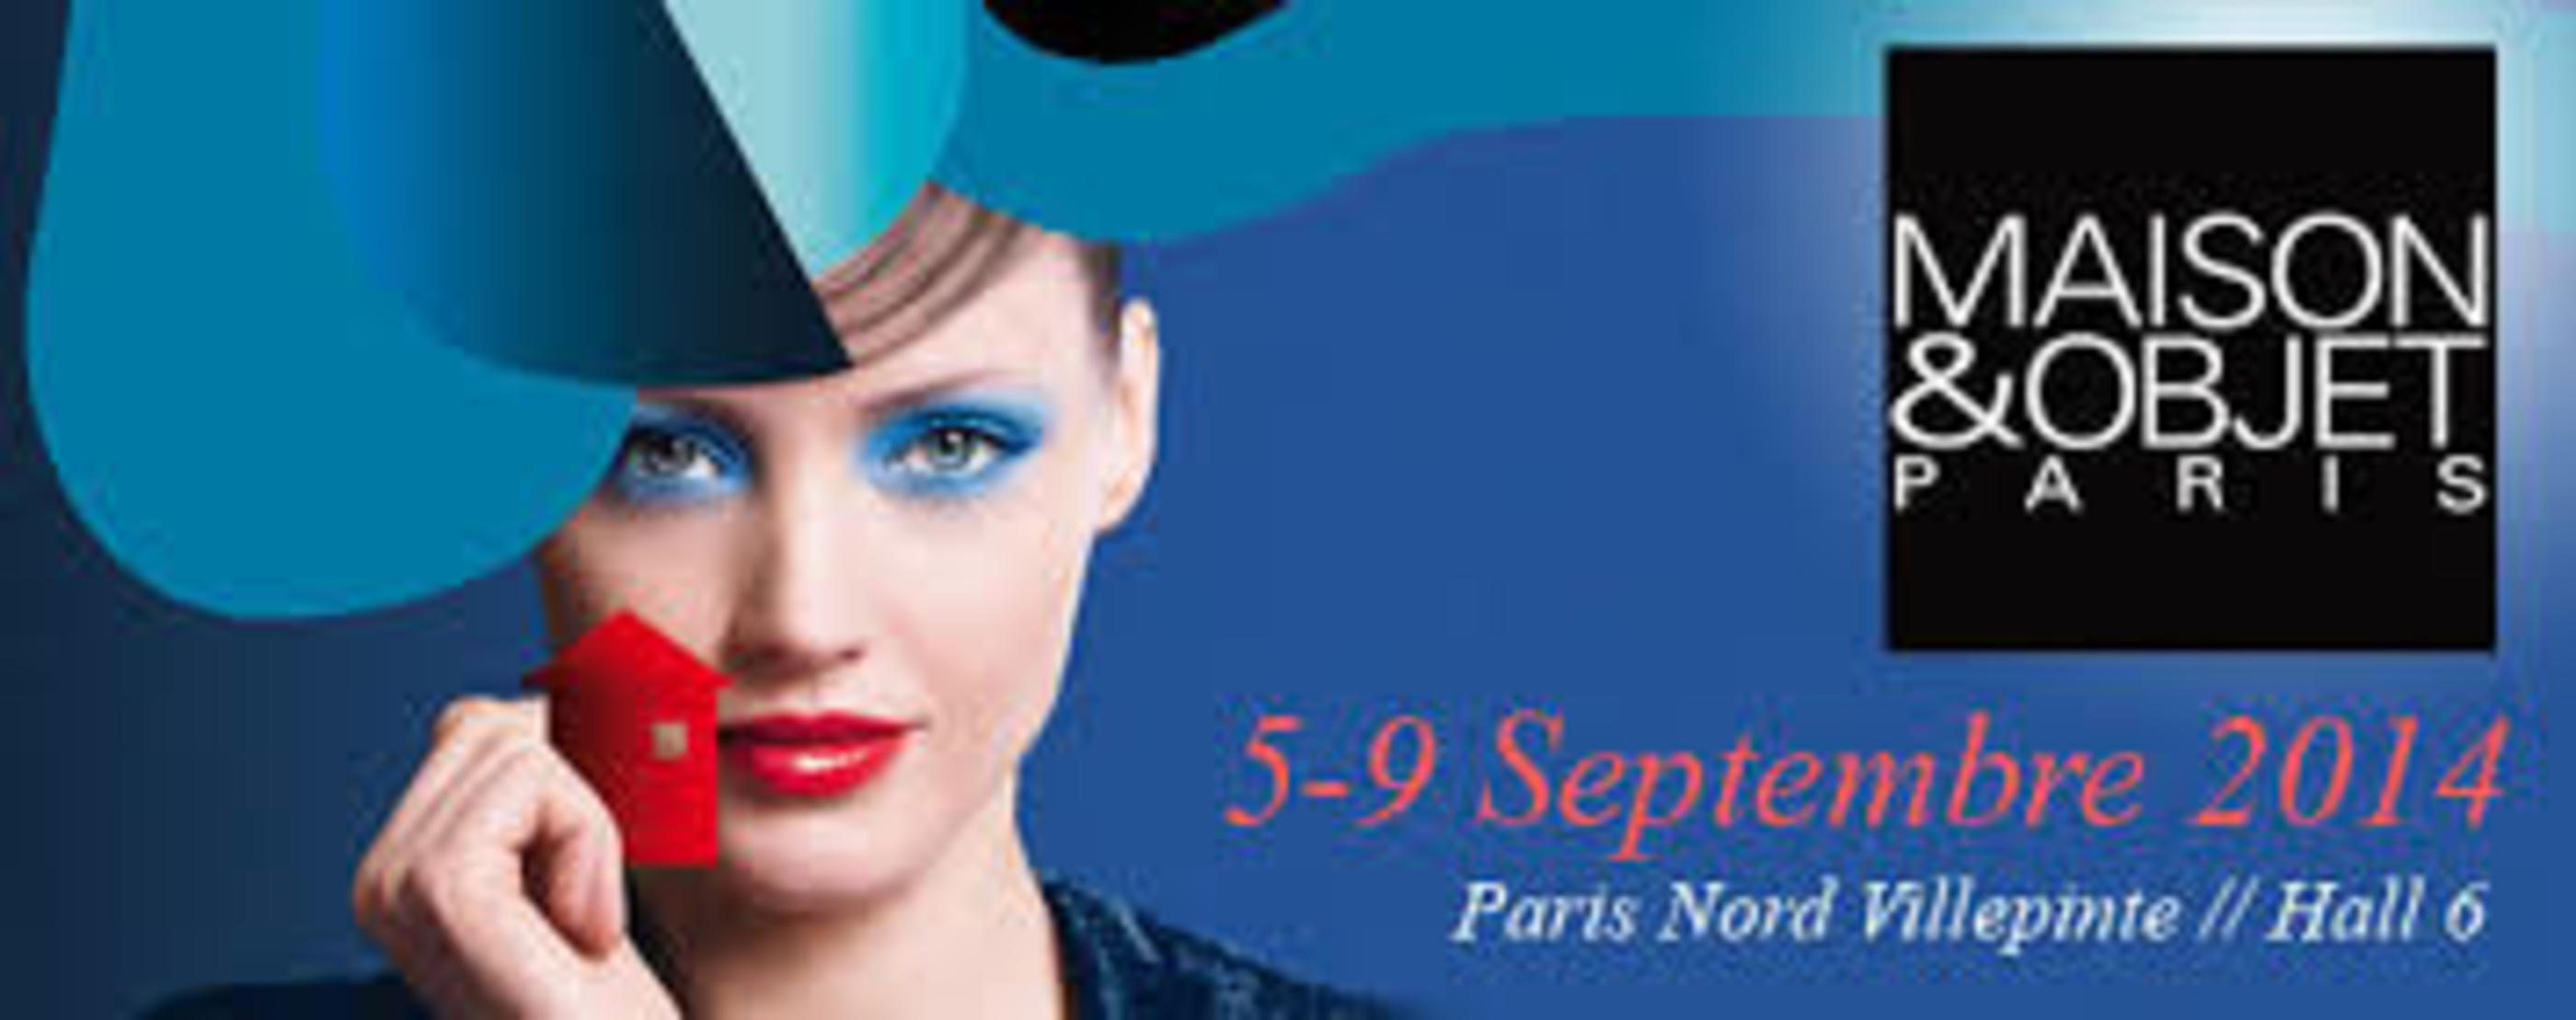 Salon Maison et Objet - Paris Nord Villepinte, France - du 5 au 9 septembre 2014